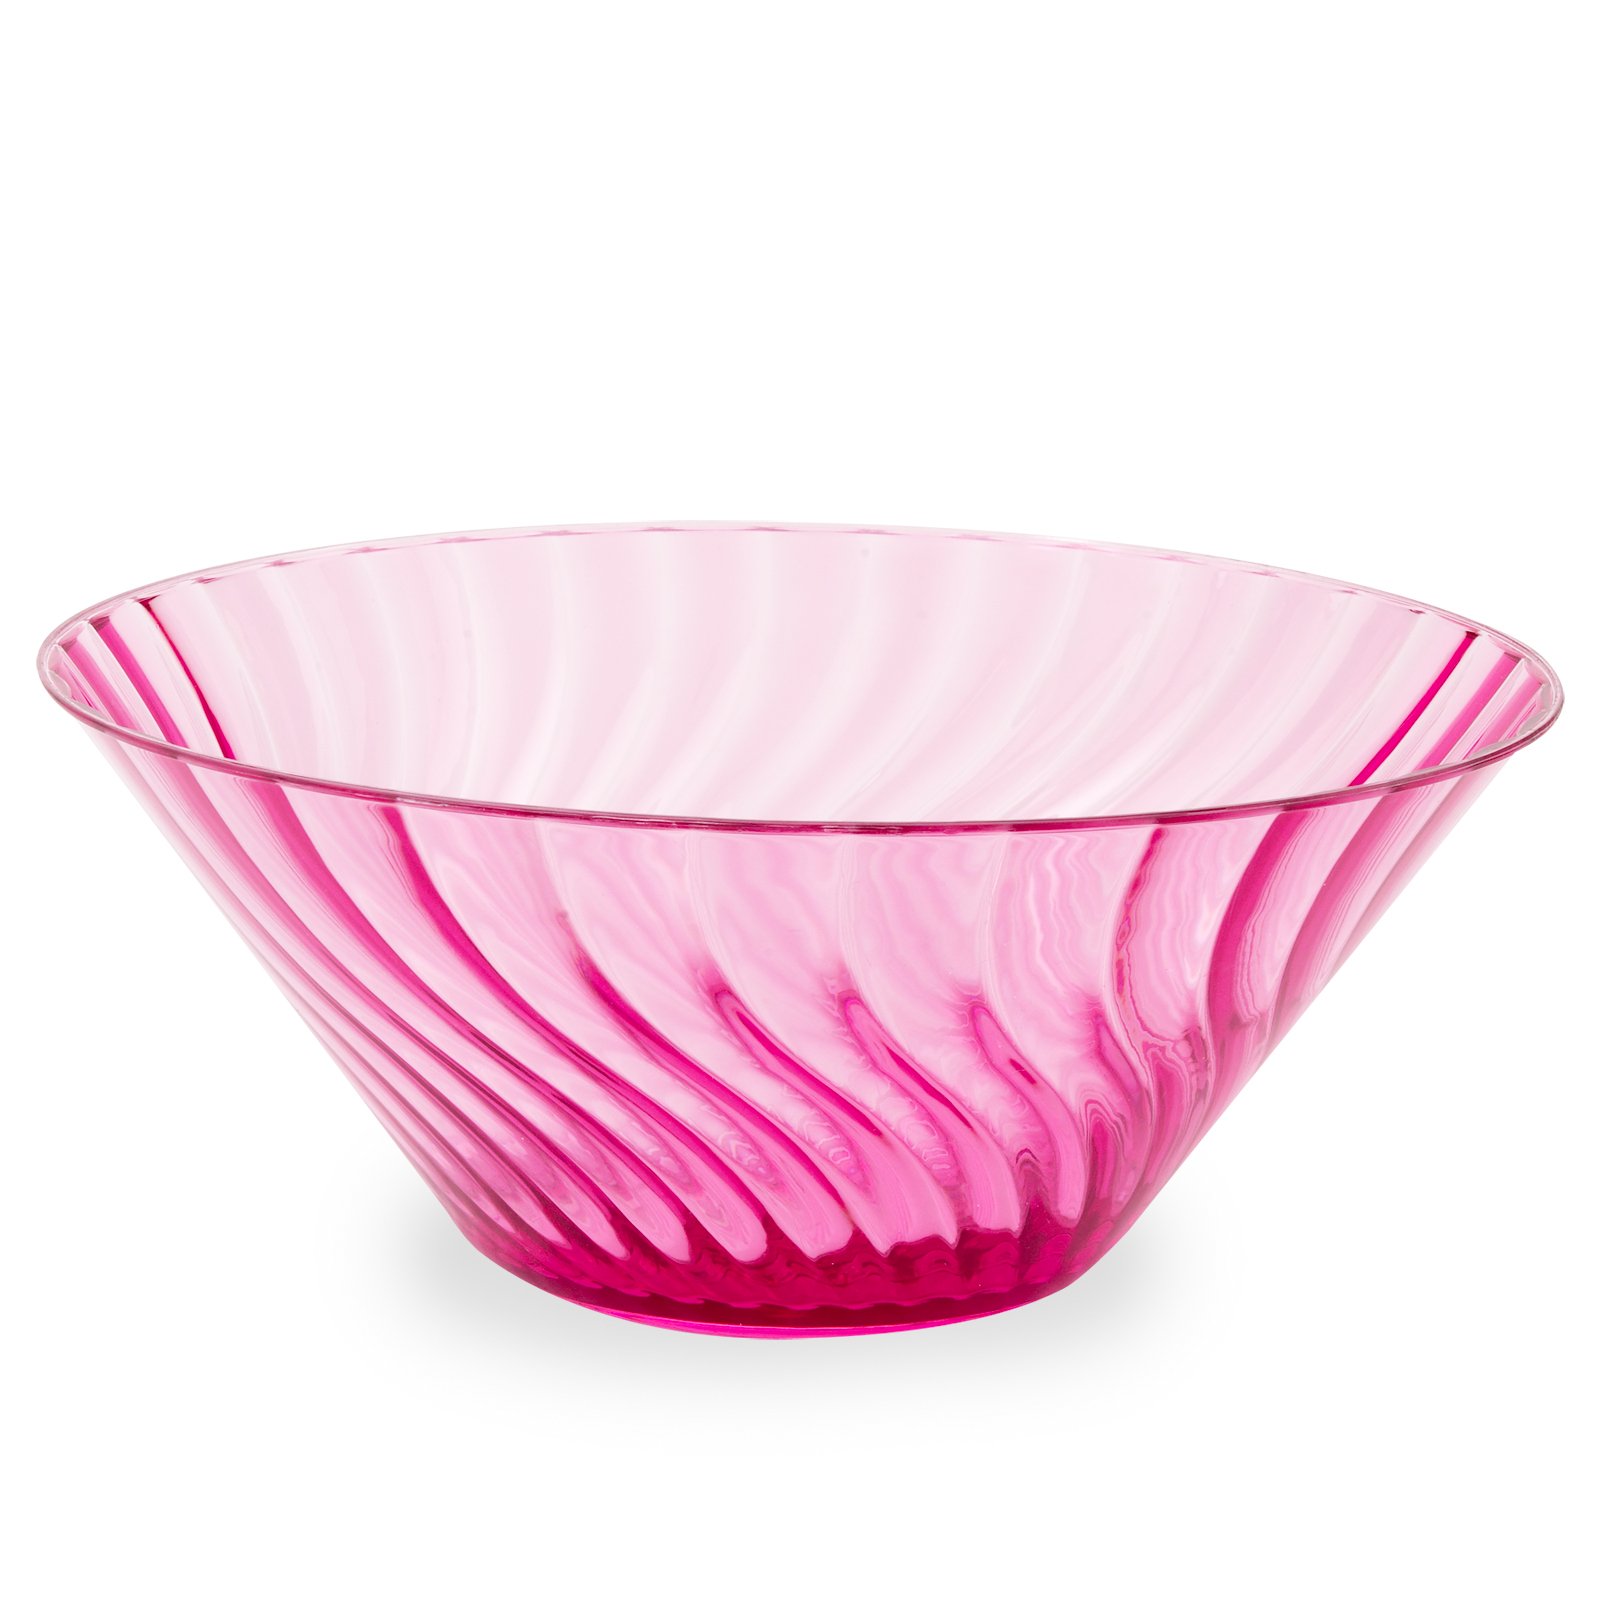 11" Hot Pink Large Bowl